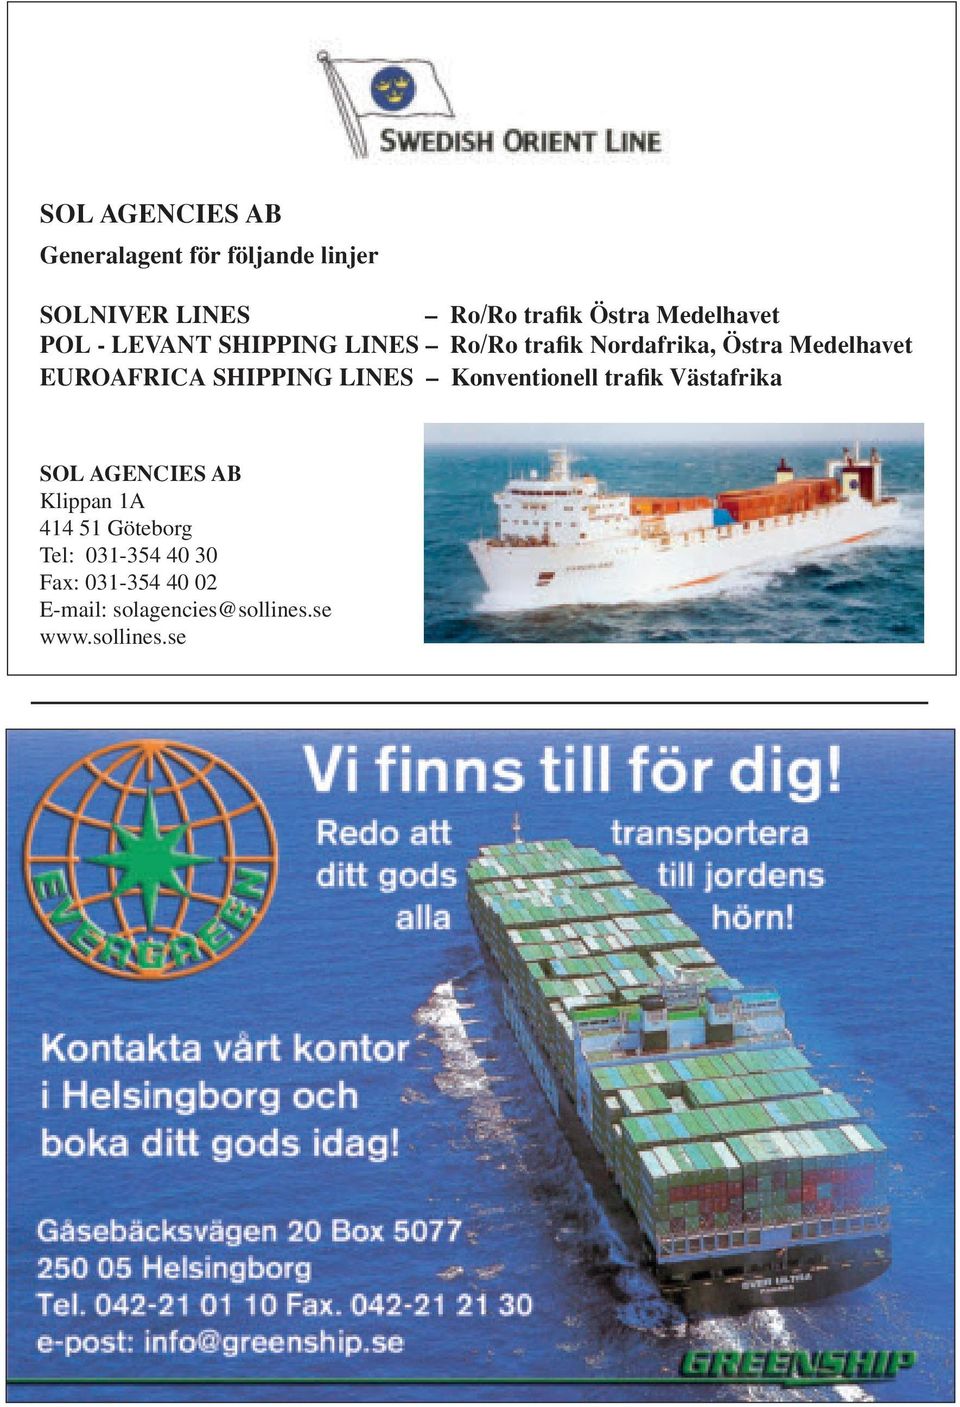 EUROAFRICA SHIPPING LINES Konventionell trafik Västafrika SOL AGENCIES AB Klippan 1A